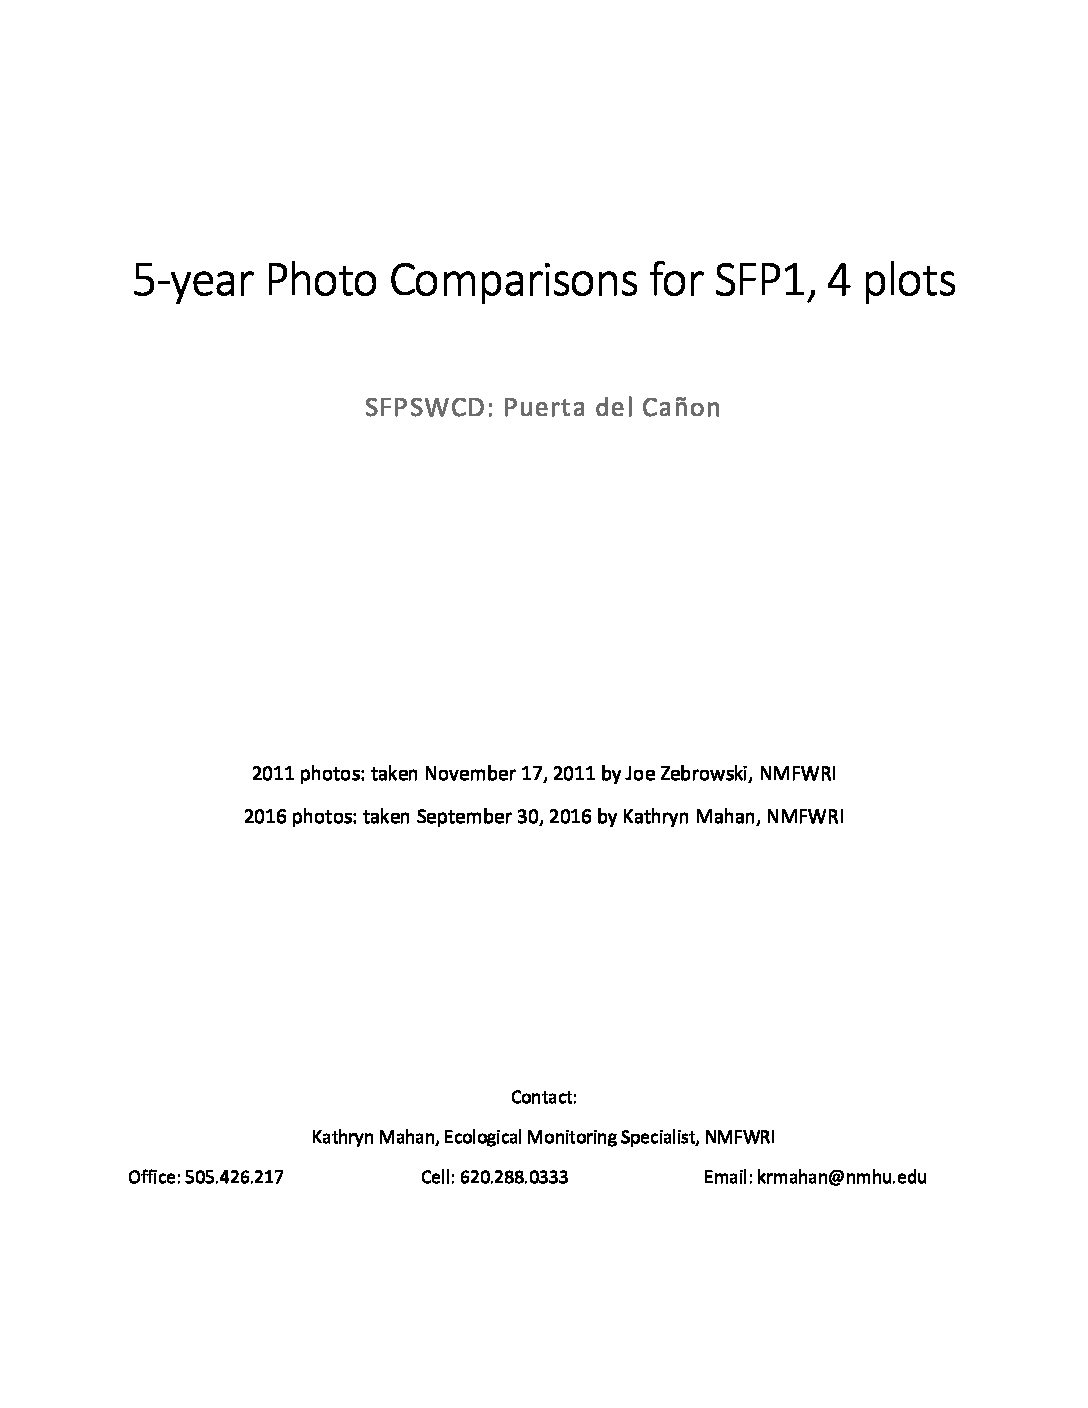 Santa Fe - Pojoaque Site 1, 5 year Photo Comparisons